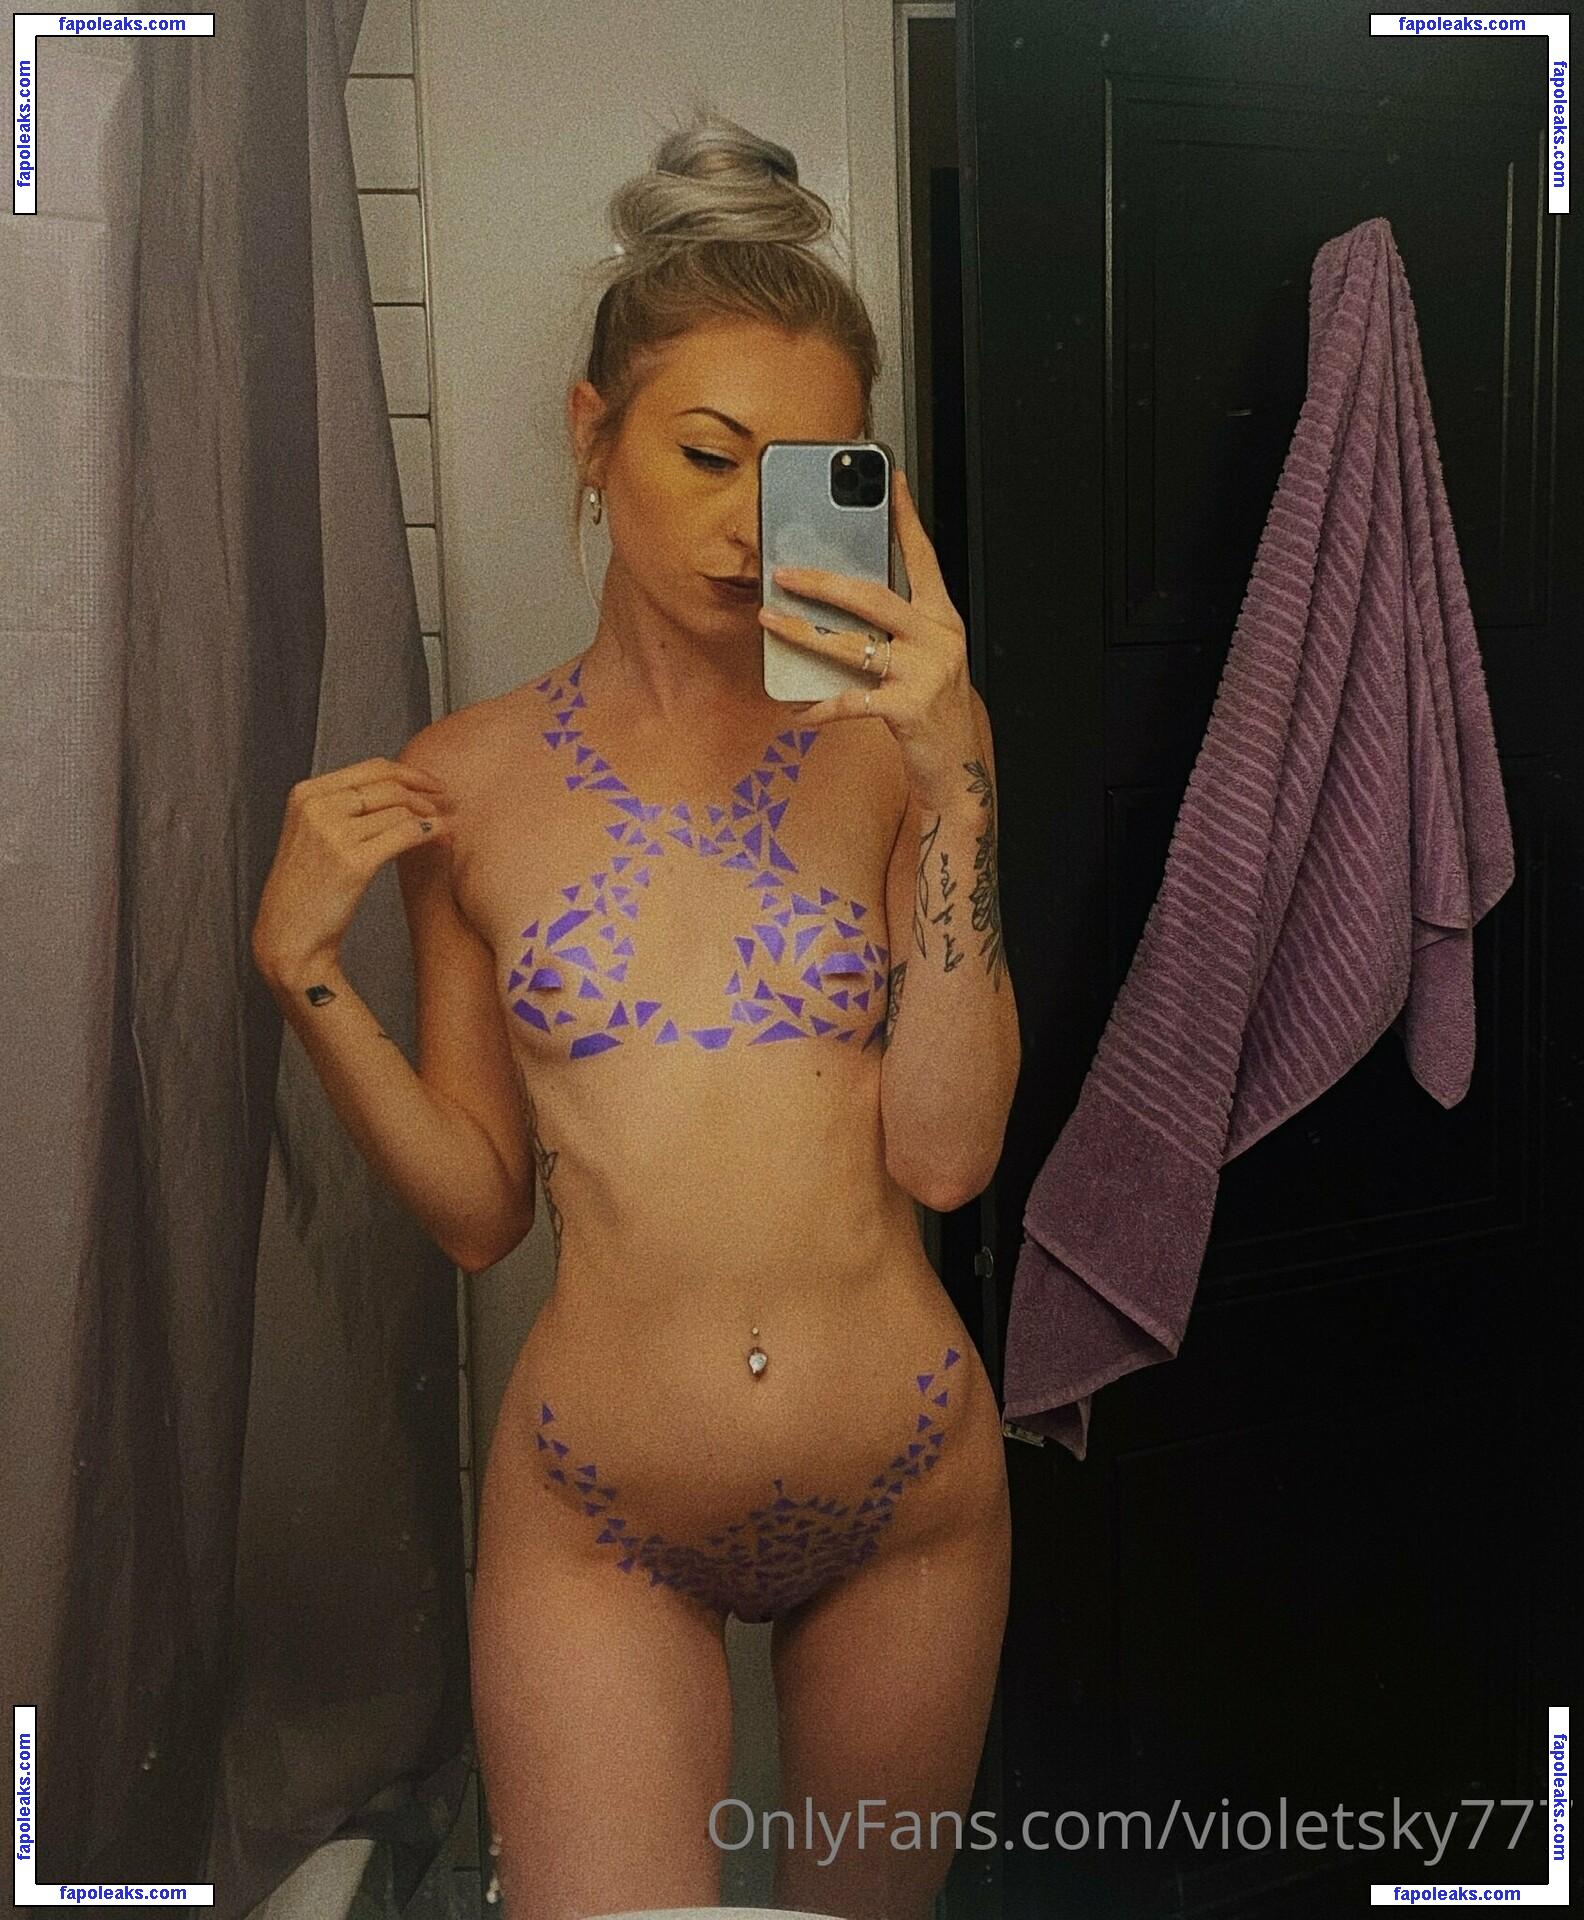 violetsky777 / violetivy77 nude photo #0003 from OnlyFans